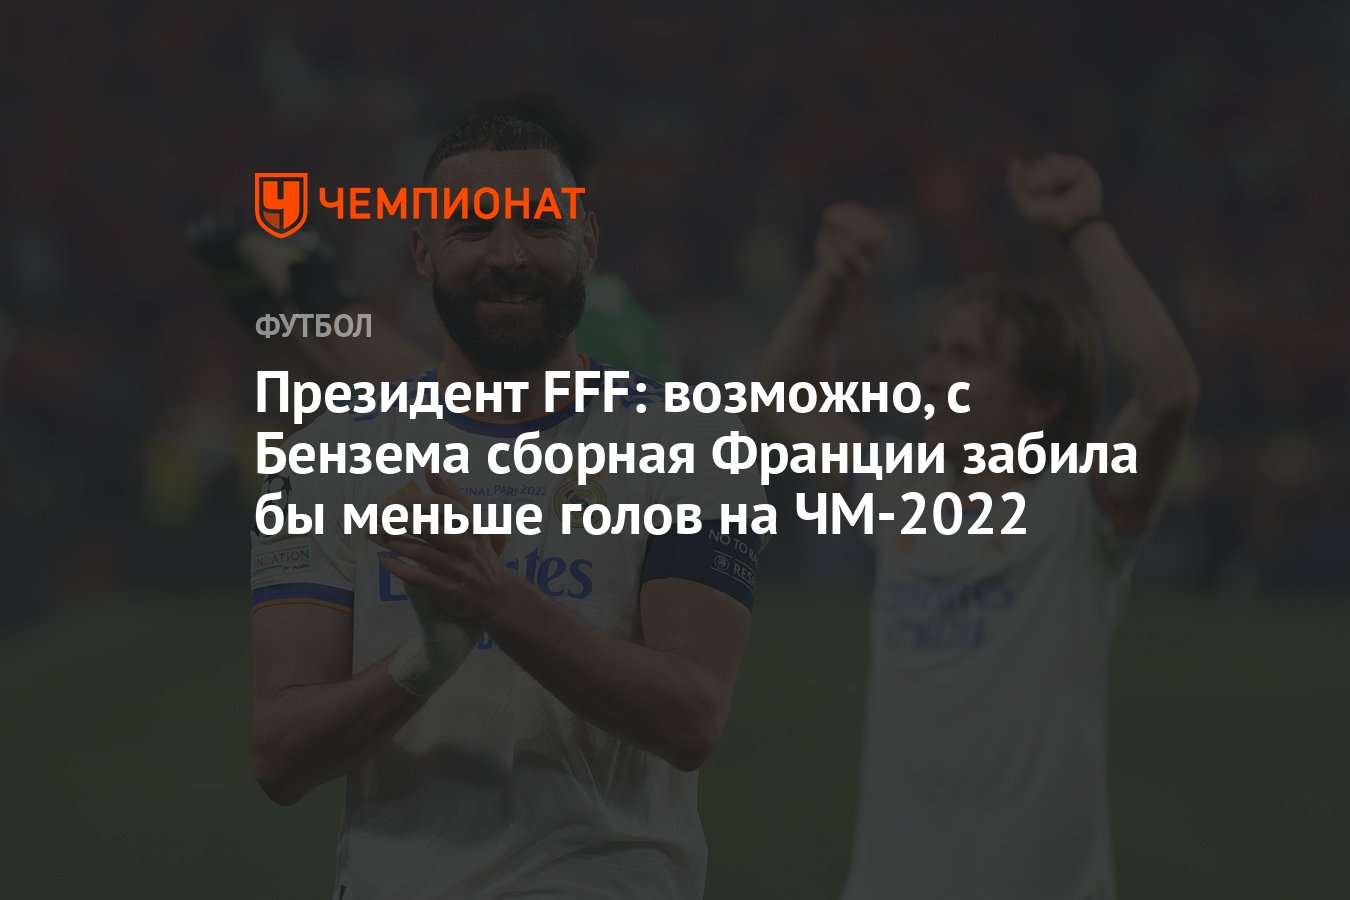 Президент FFF: возможно, с Бензема сборная Франции забила бы меньше голов  на ЧМ-2022 - Чемпионат